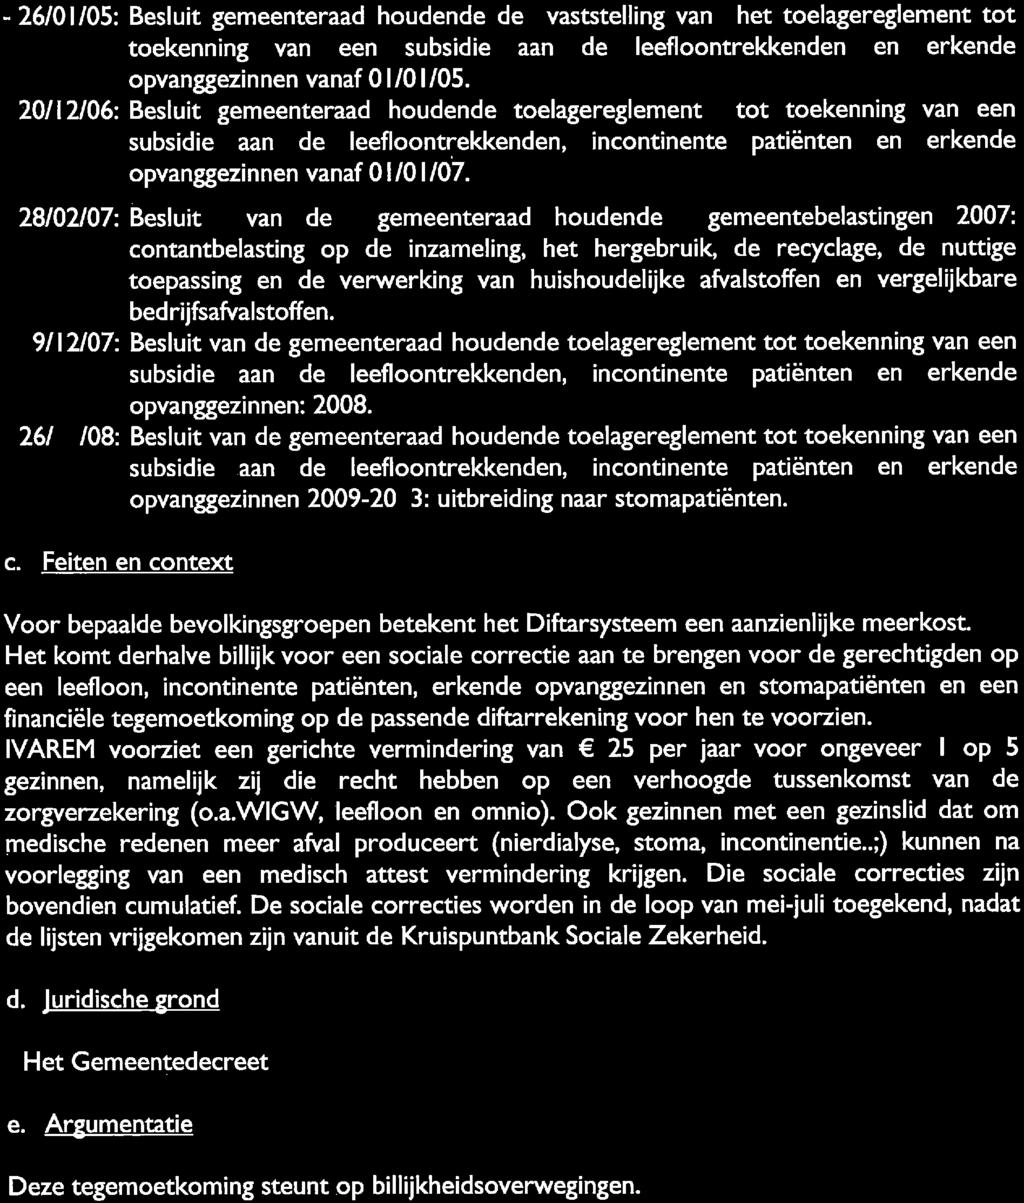 -26/01/05: Besluit gemeenteraad houdende de vaststelling van het toelagereglement tot toekenning van een subsidie aan de leefloontrekkenden en erkende opvanggezinnen vanaf 01/01,05.